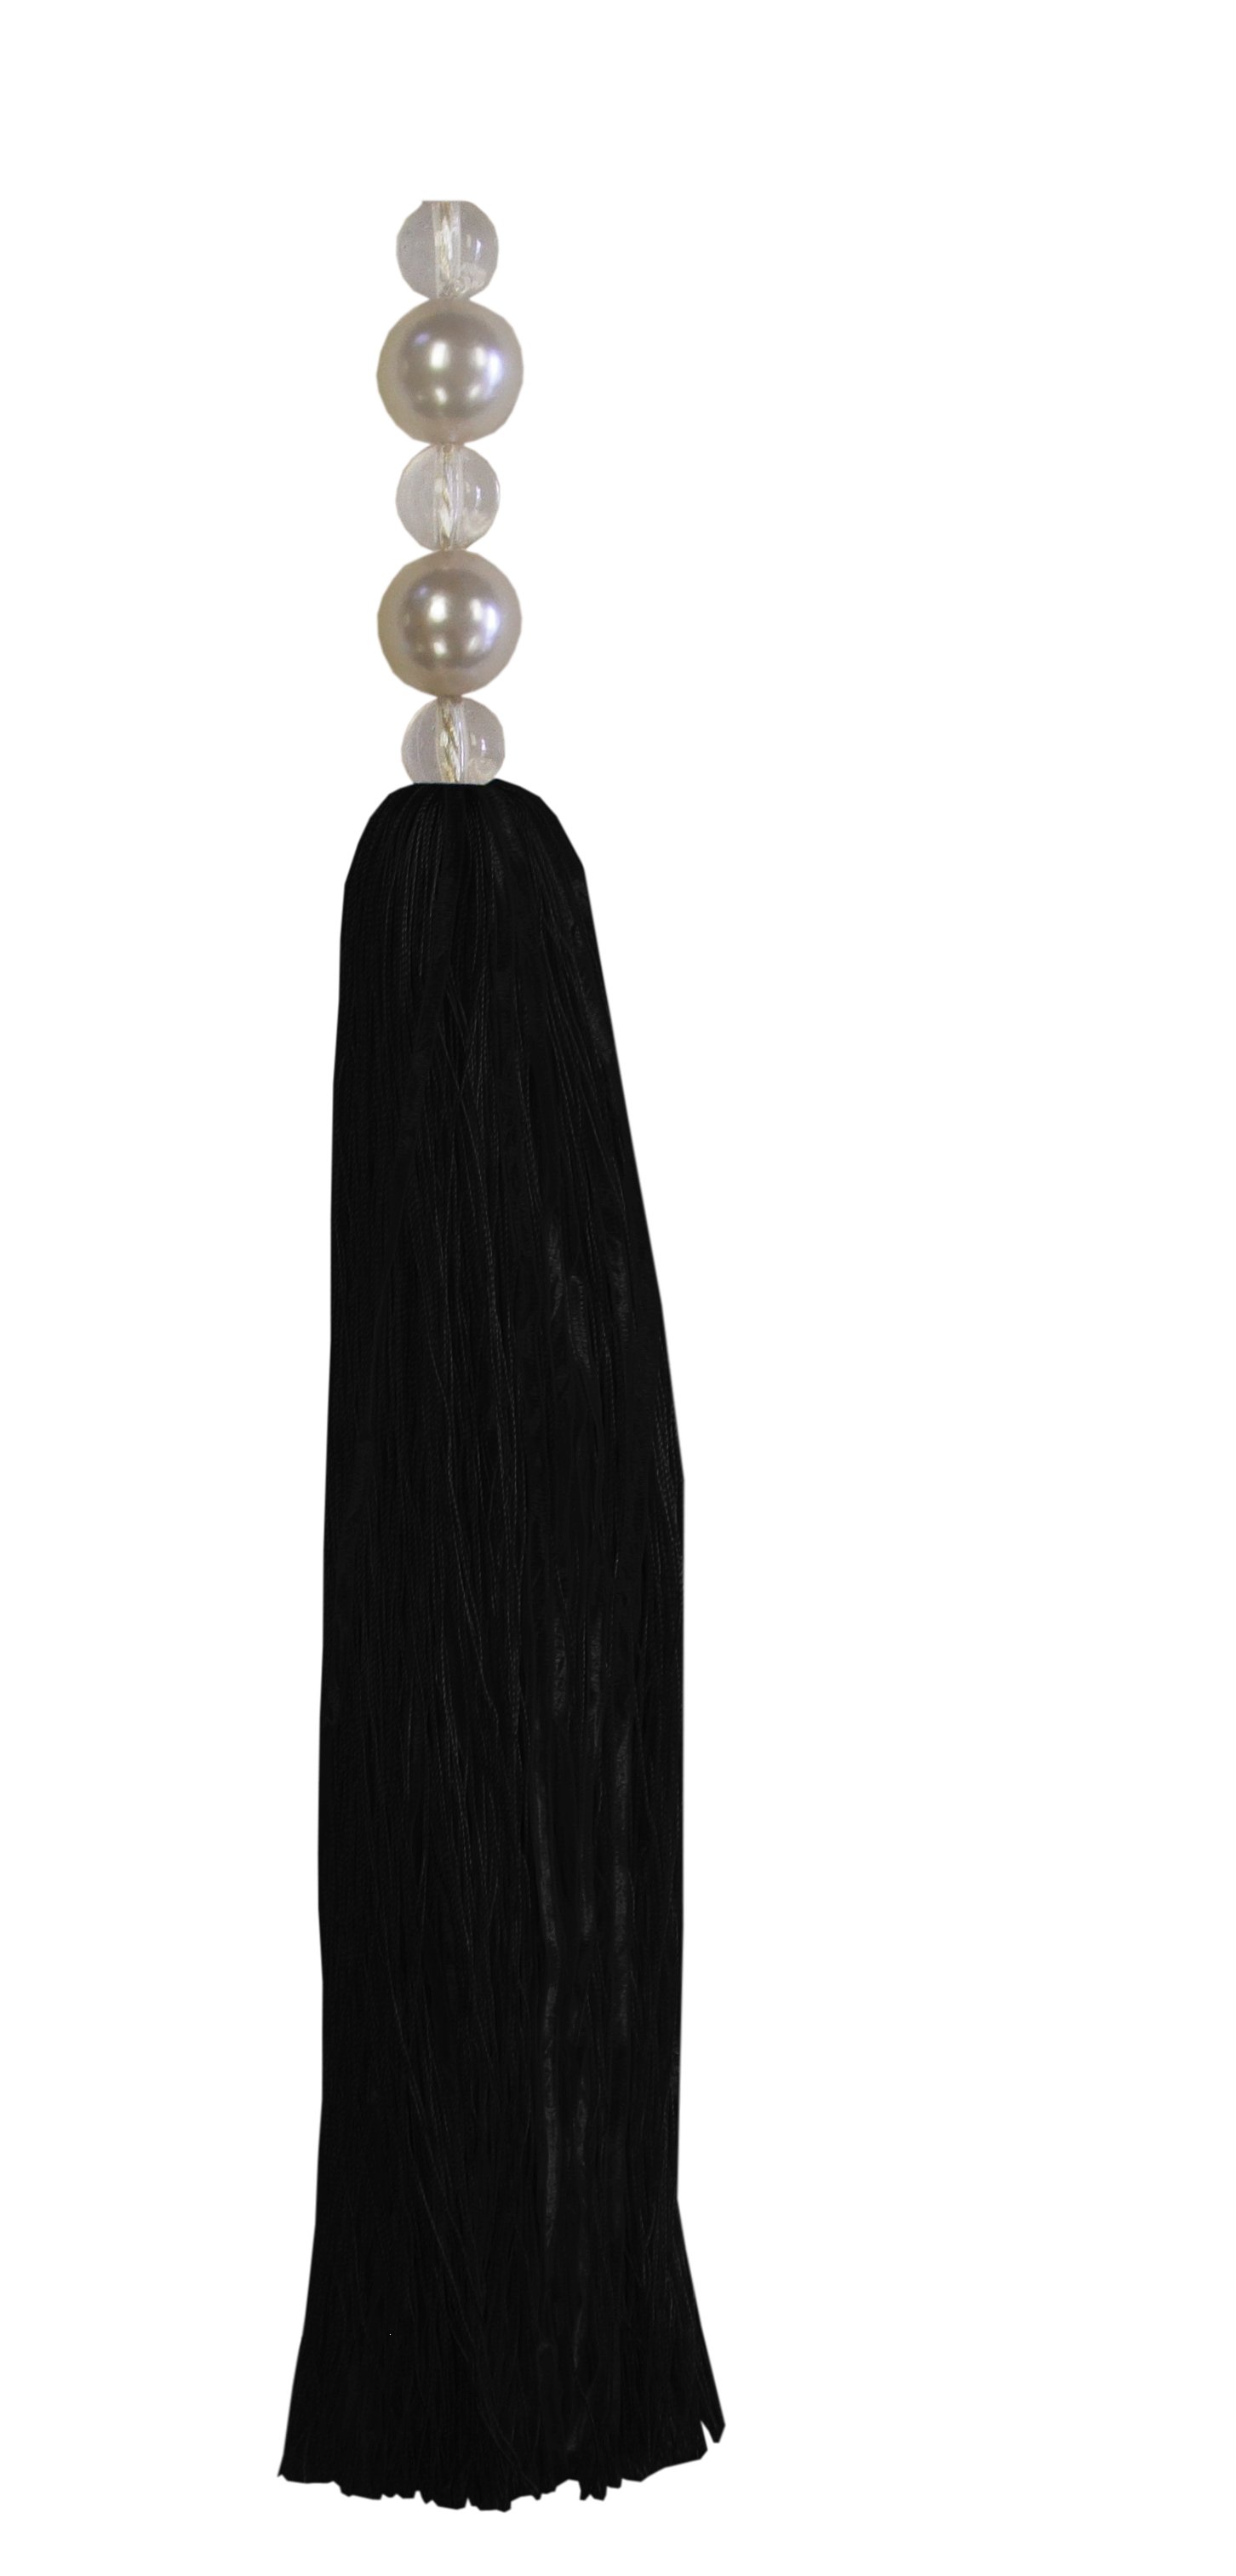 Tassel with Pearl Top - Black 25cm